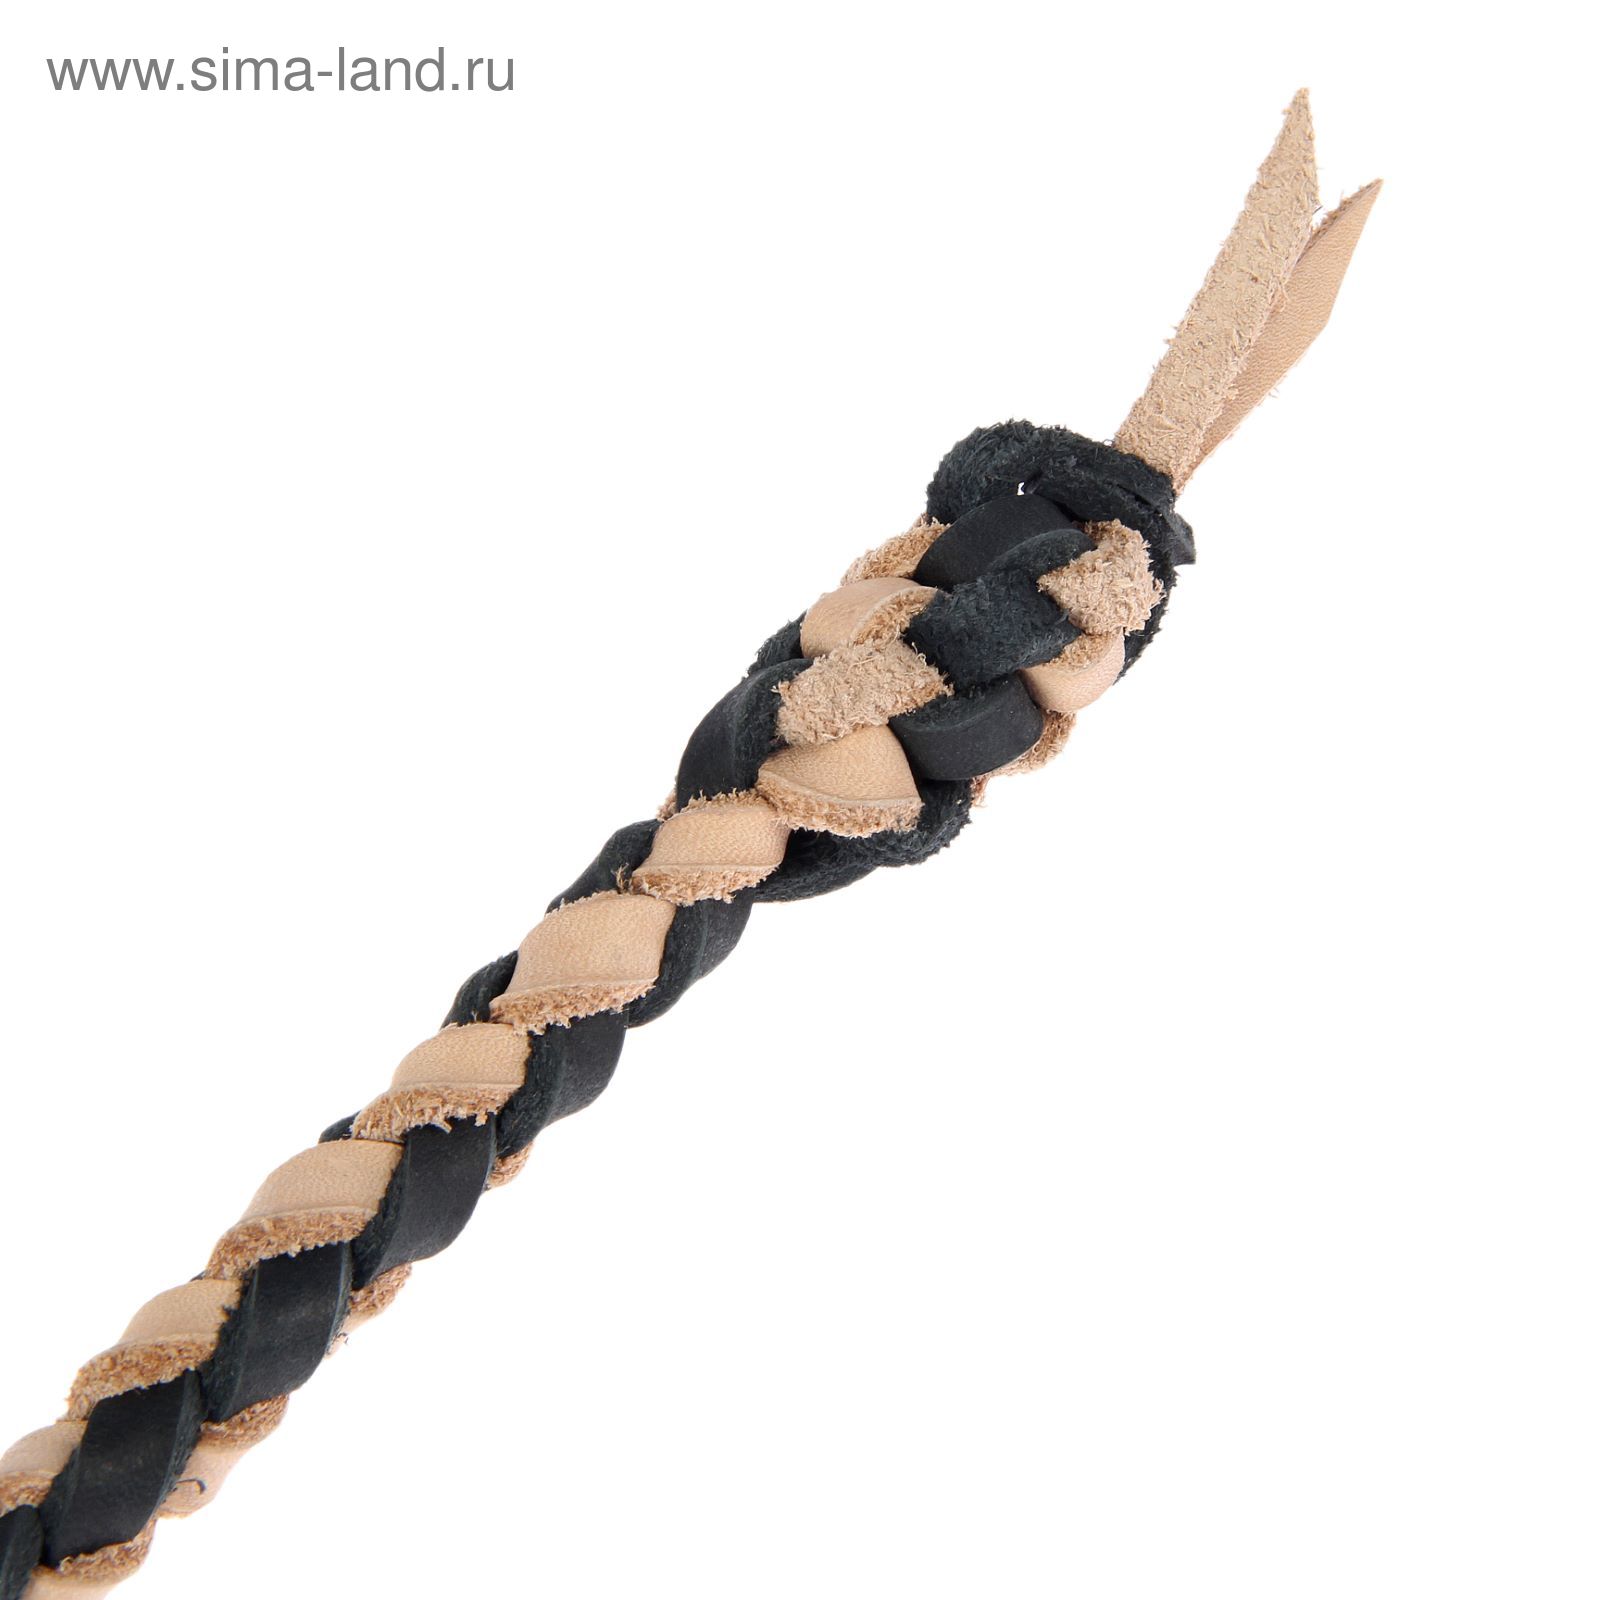 Нагайка Донская, ручка оплетена кожей, черный с бежевым